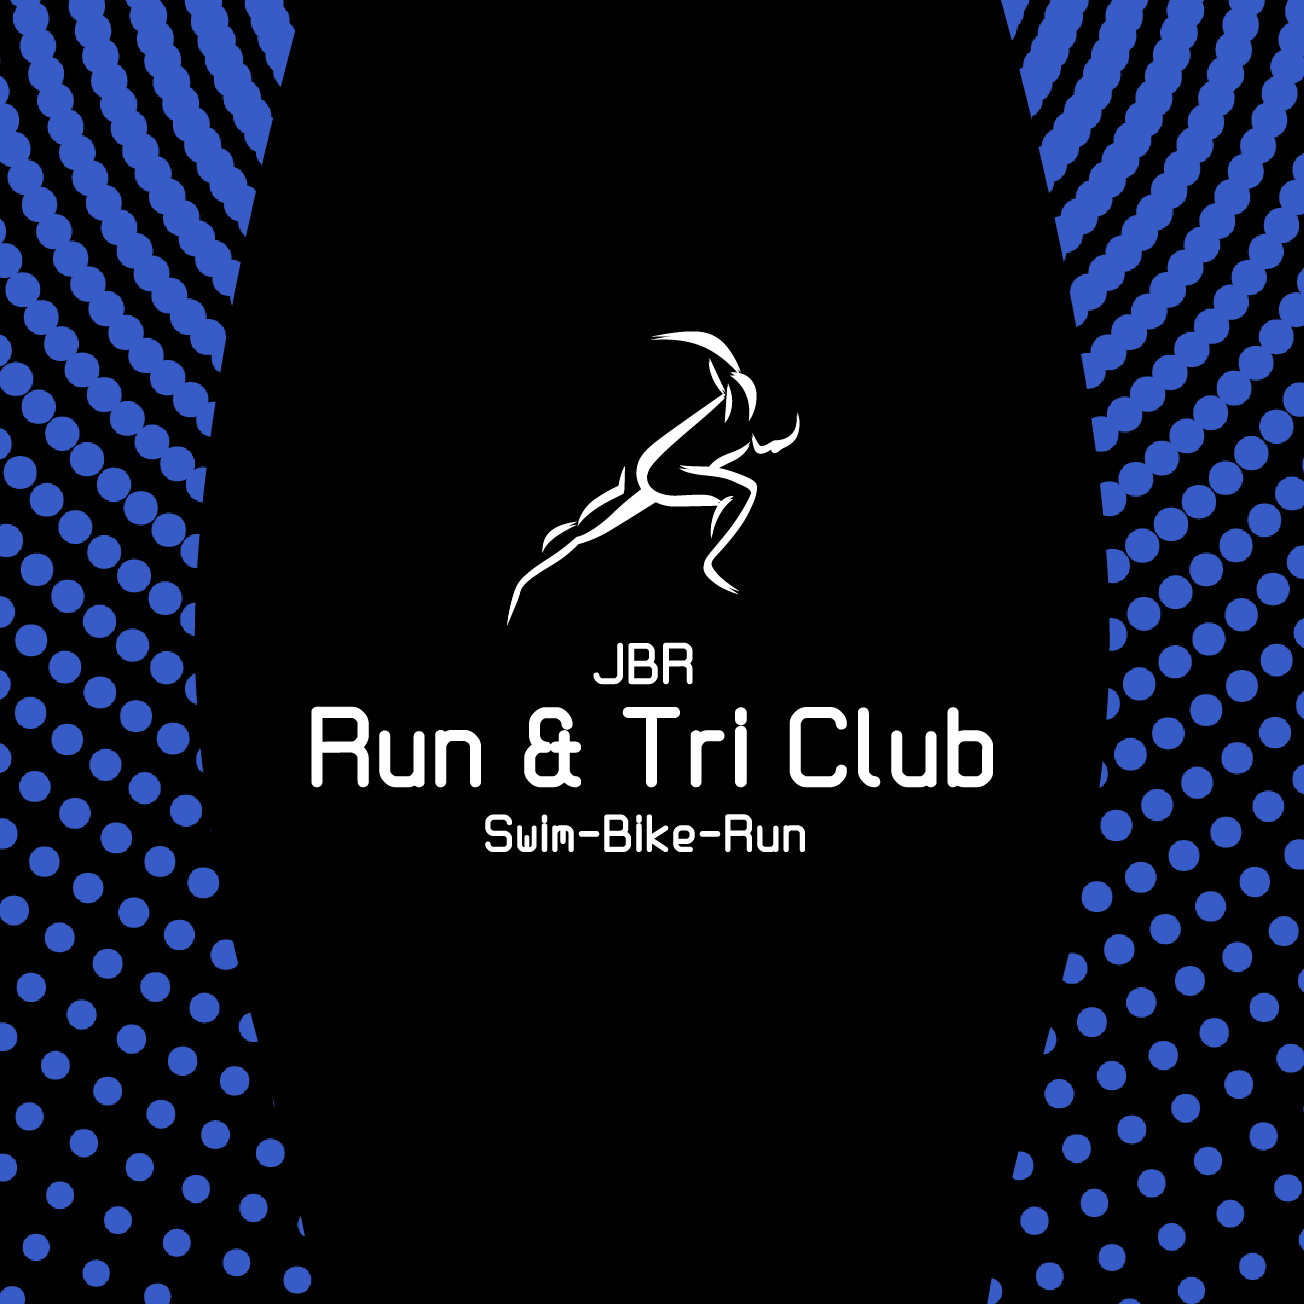 Club Image for JBR RUN AND TRI CLUB